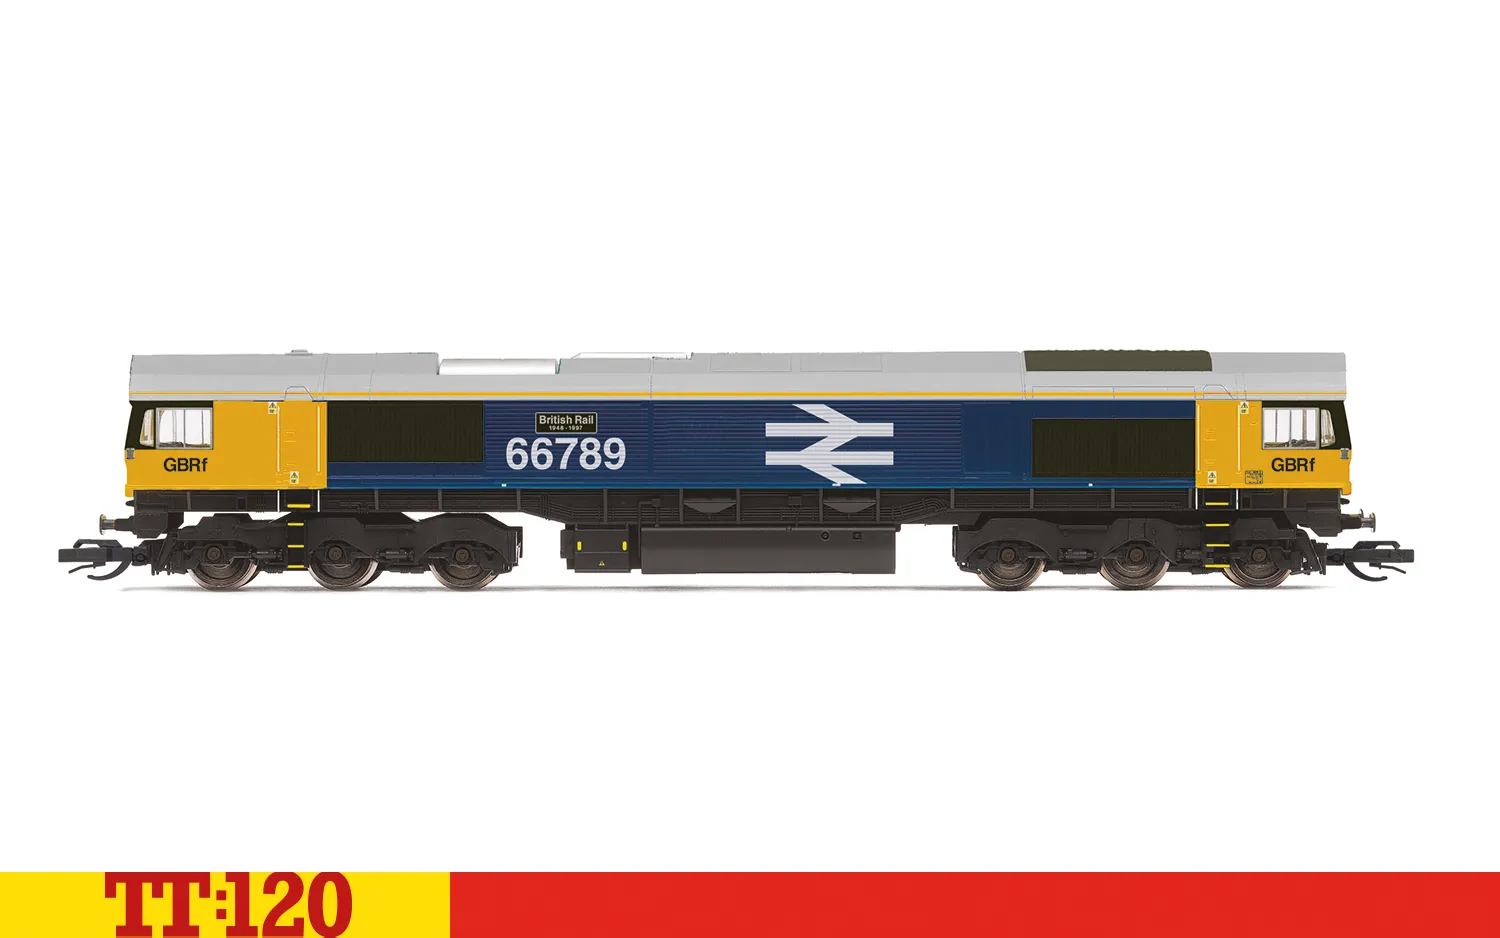 GBRf, Classe 66, Co-Co, 66789, 'British Rail 1948-1997'- Époque 11